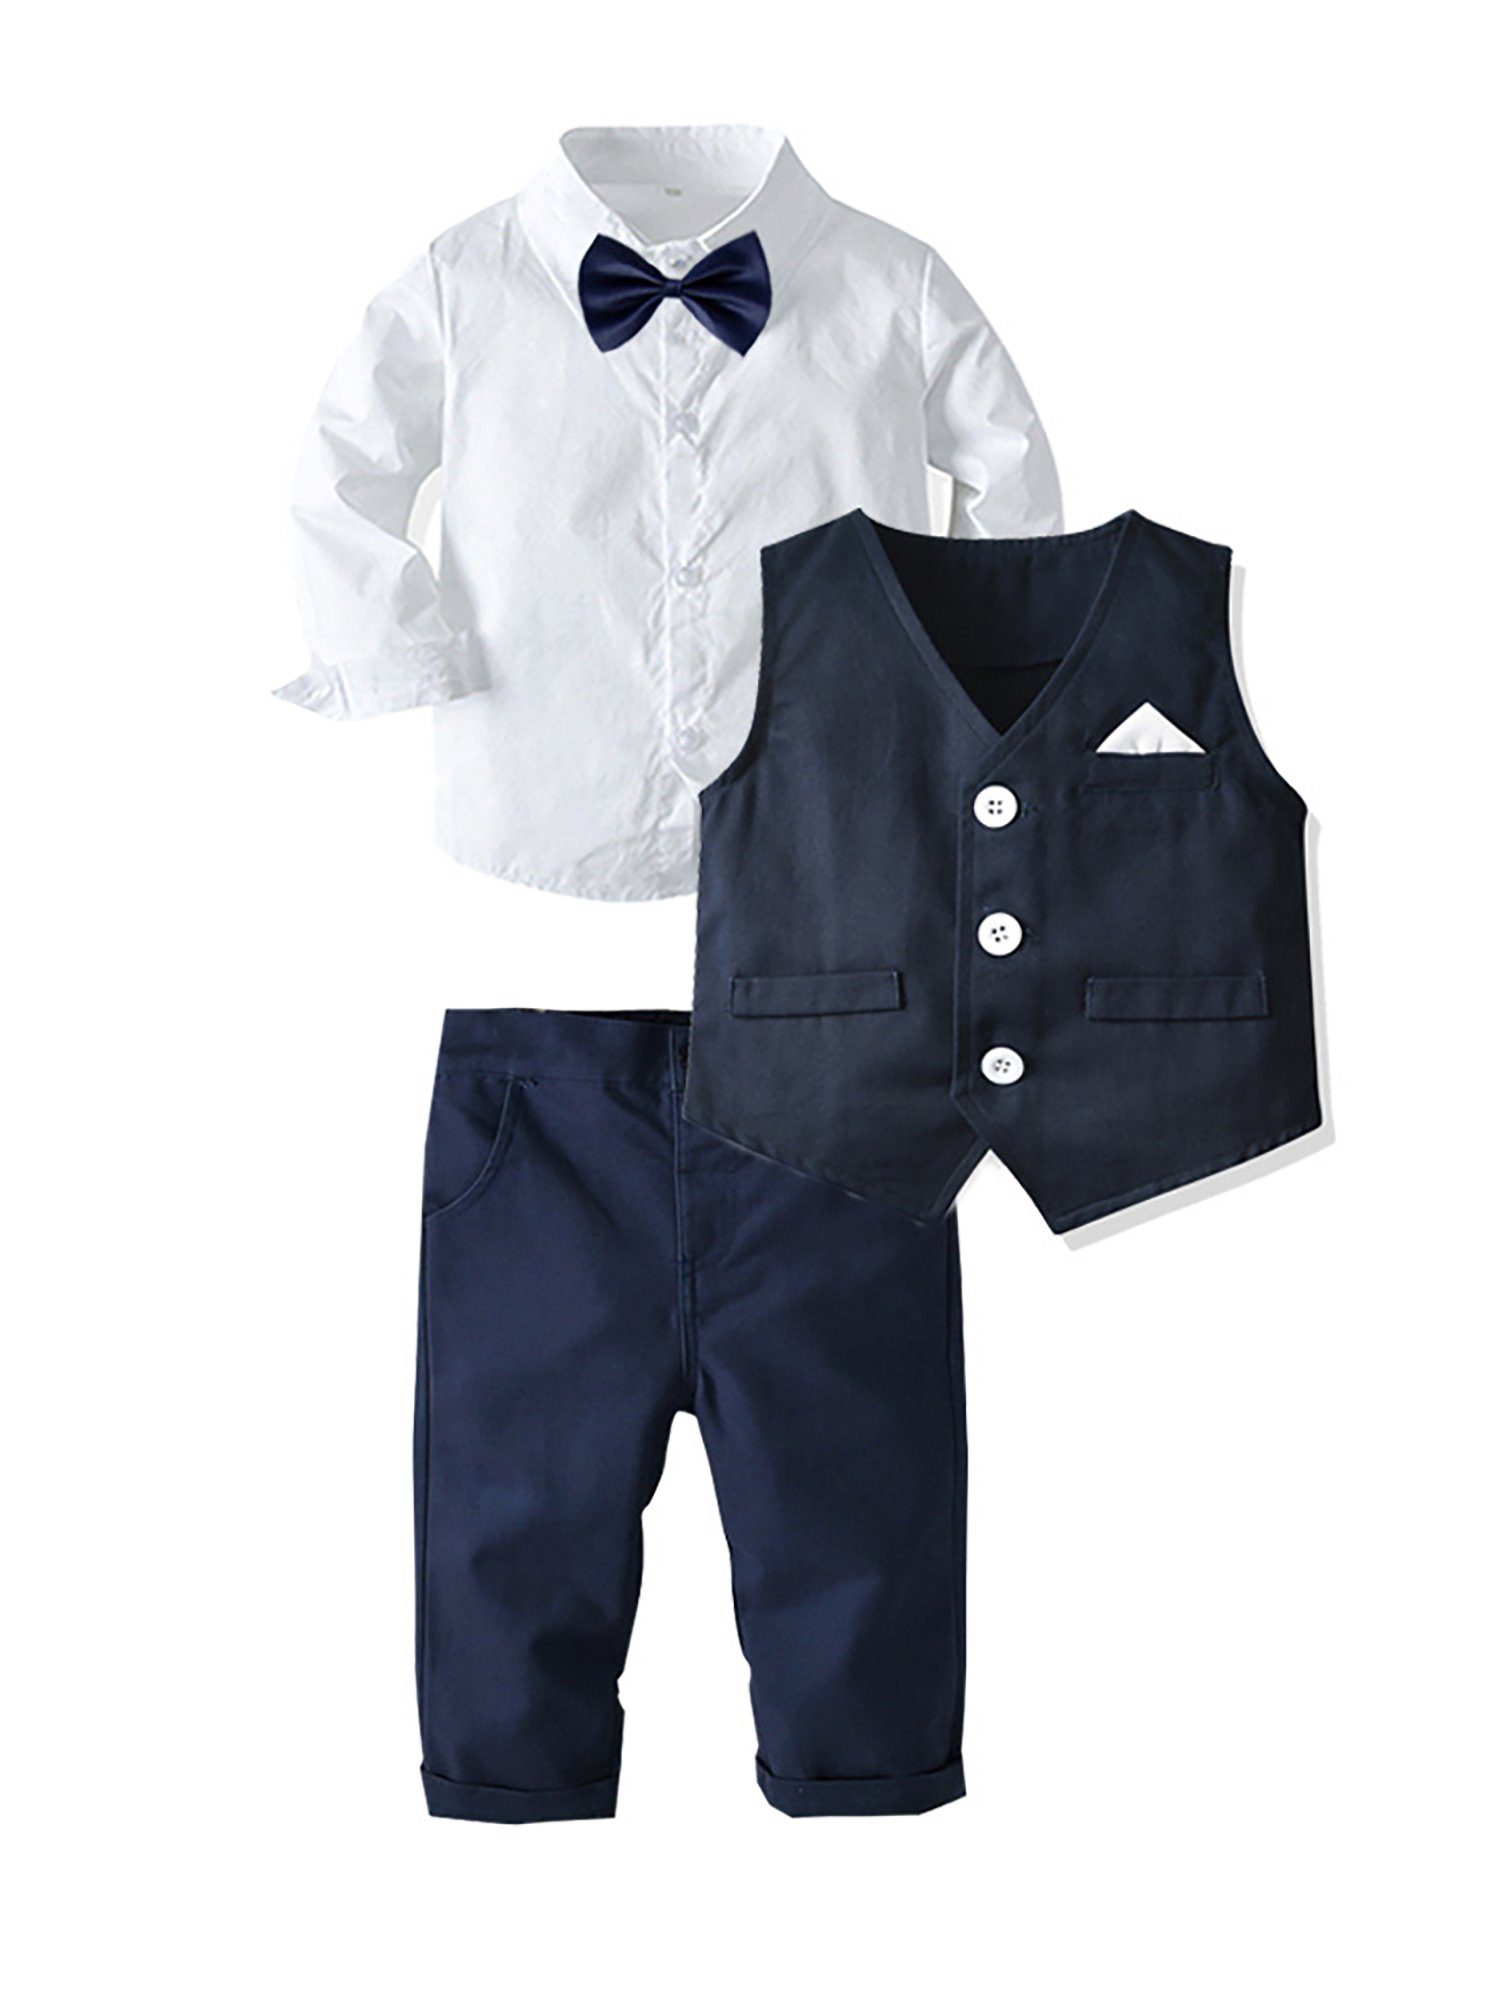 Lapastyle Anzug 4-teilig Jungen Kinderanzug Hochzeitsanzug Festanzug für  verschiedene formelle Anlässe